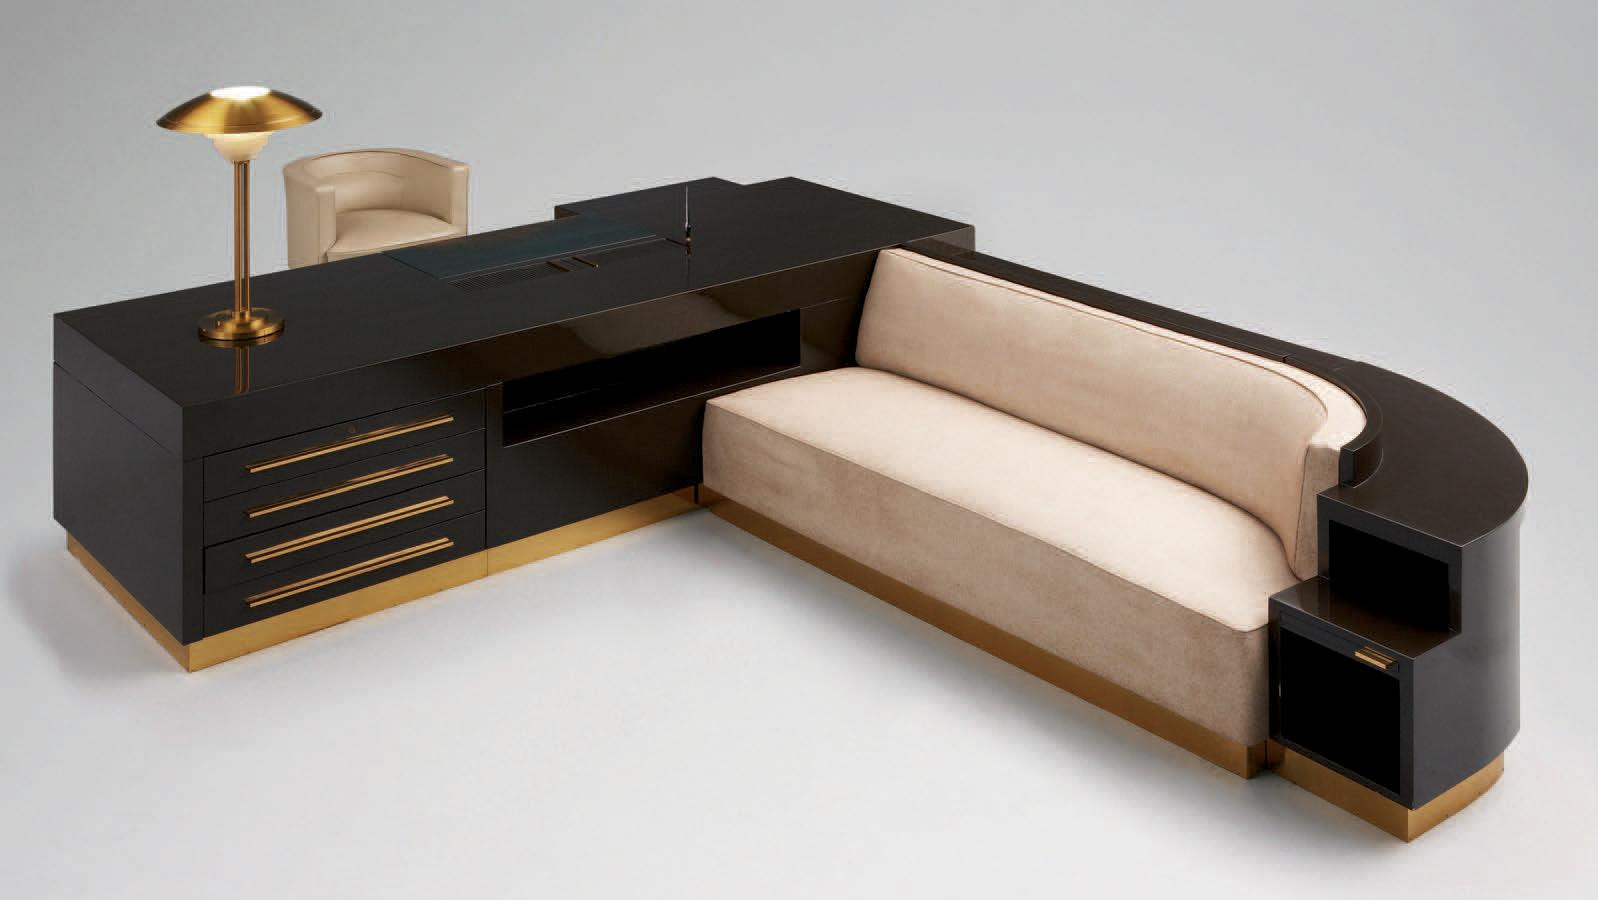 Michel Roux-Spitz (1888-1957), bureau-canapé-meuble de rangement en bois laqué Duco... La ligne claire